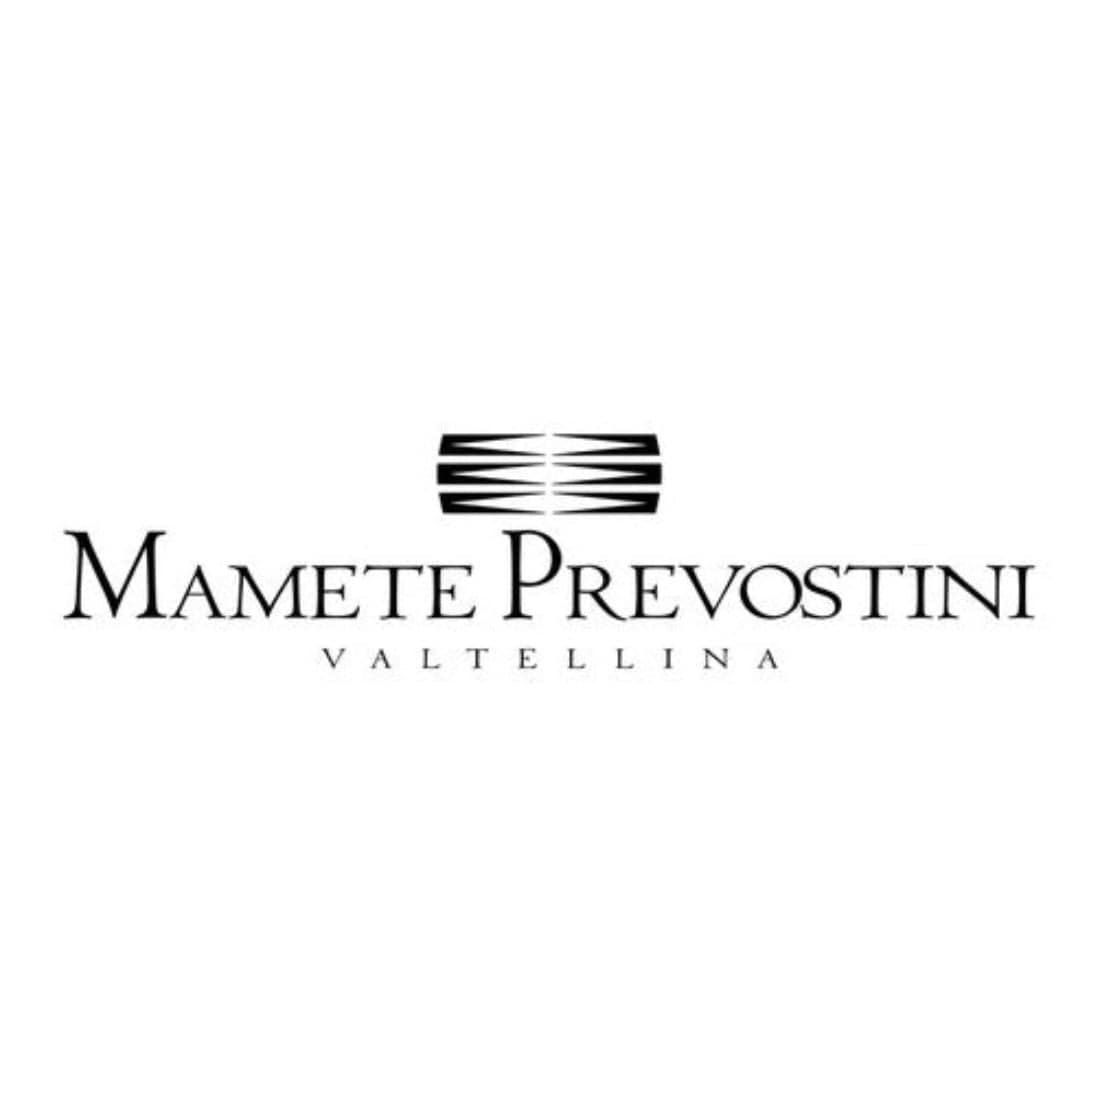 Mamete Prevostini Opera 2021 Igt Alpi Retiche Bianco - Mamete Prevostini